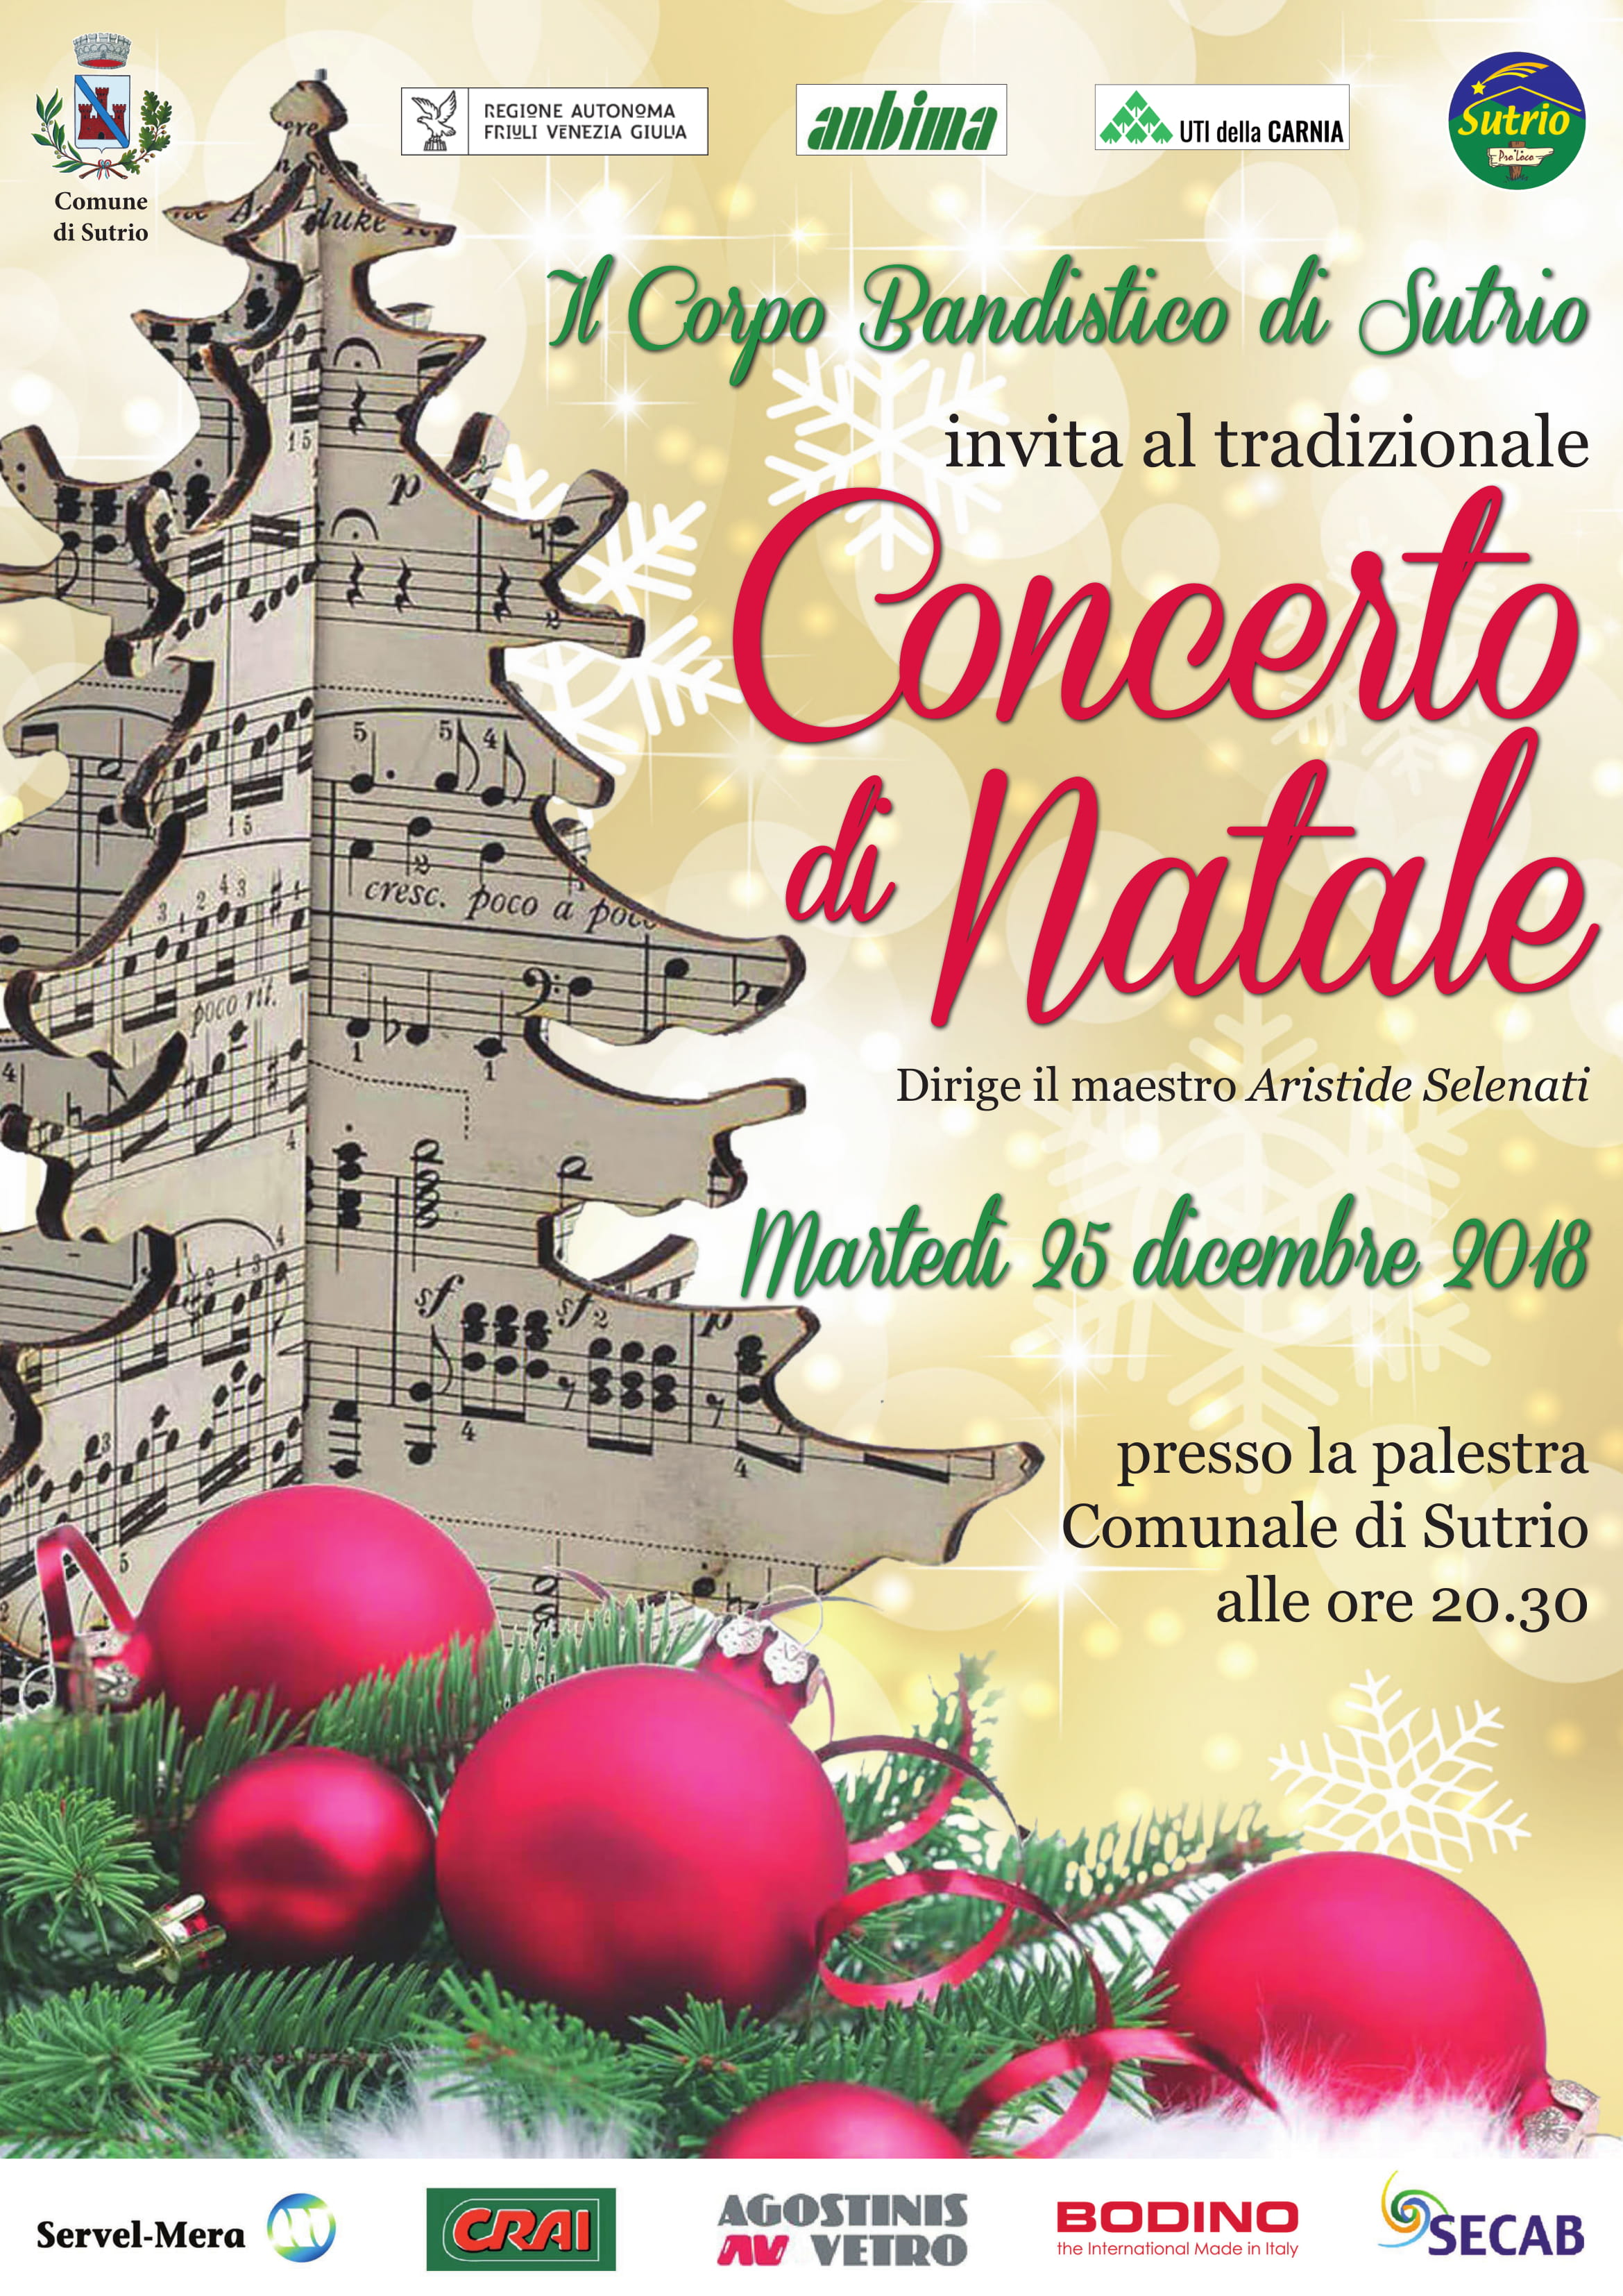 25 Dicembre Natale.Concerto Di Natale 25 Dicembre A Sutrio Anbima Regione Friuli Venezia Giulia